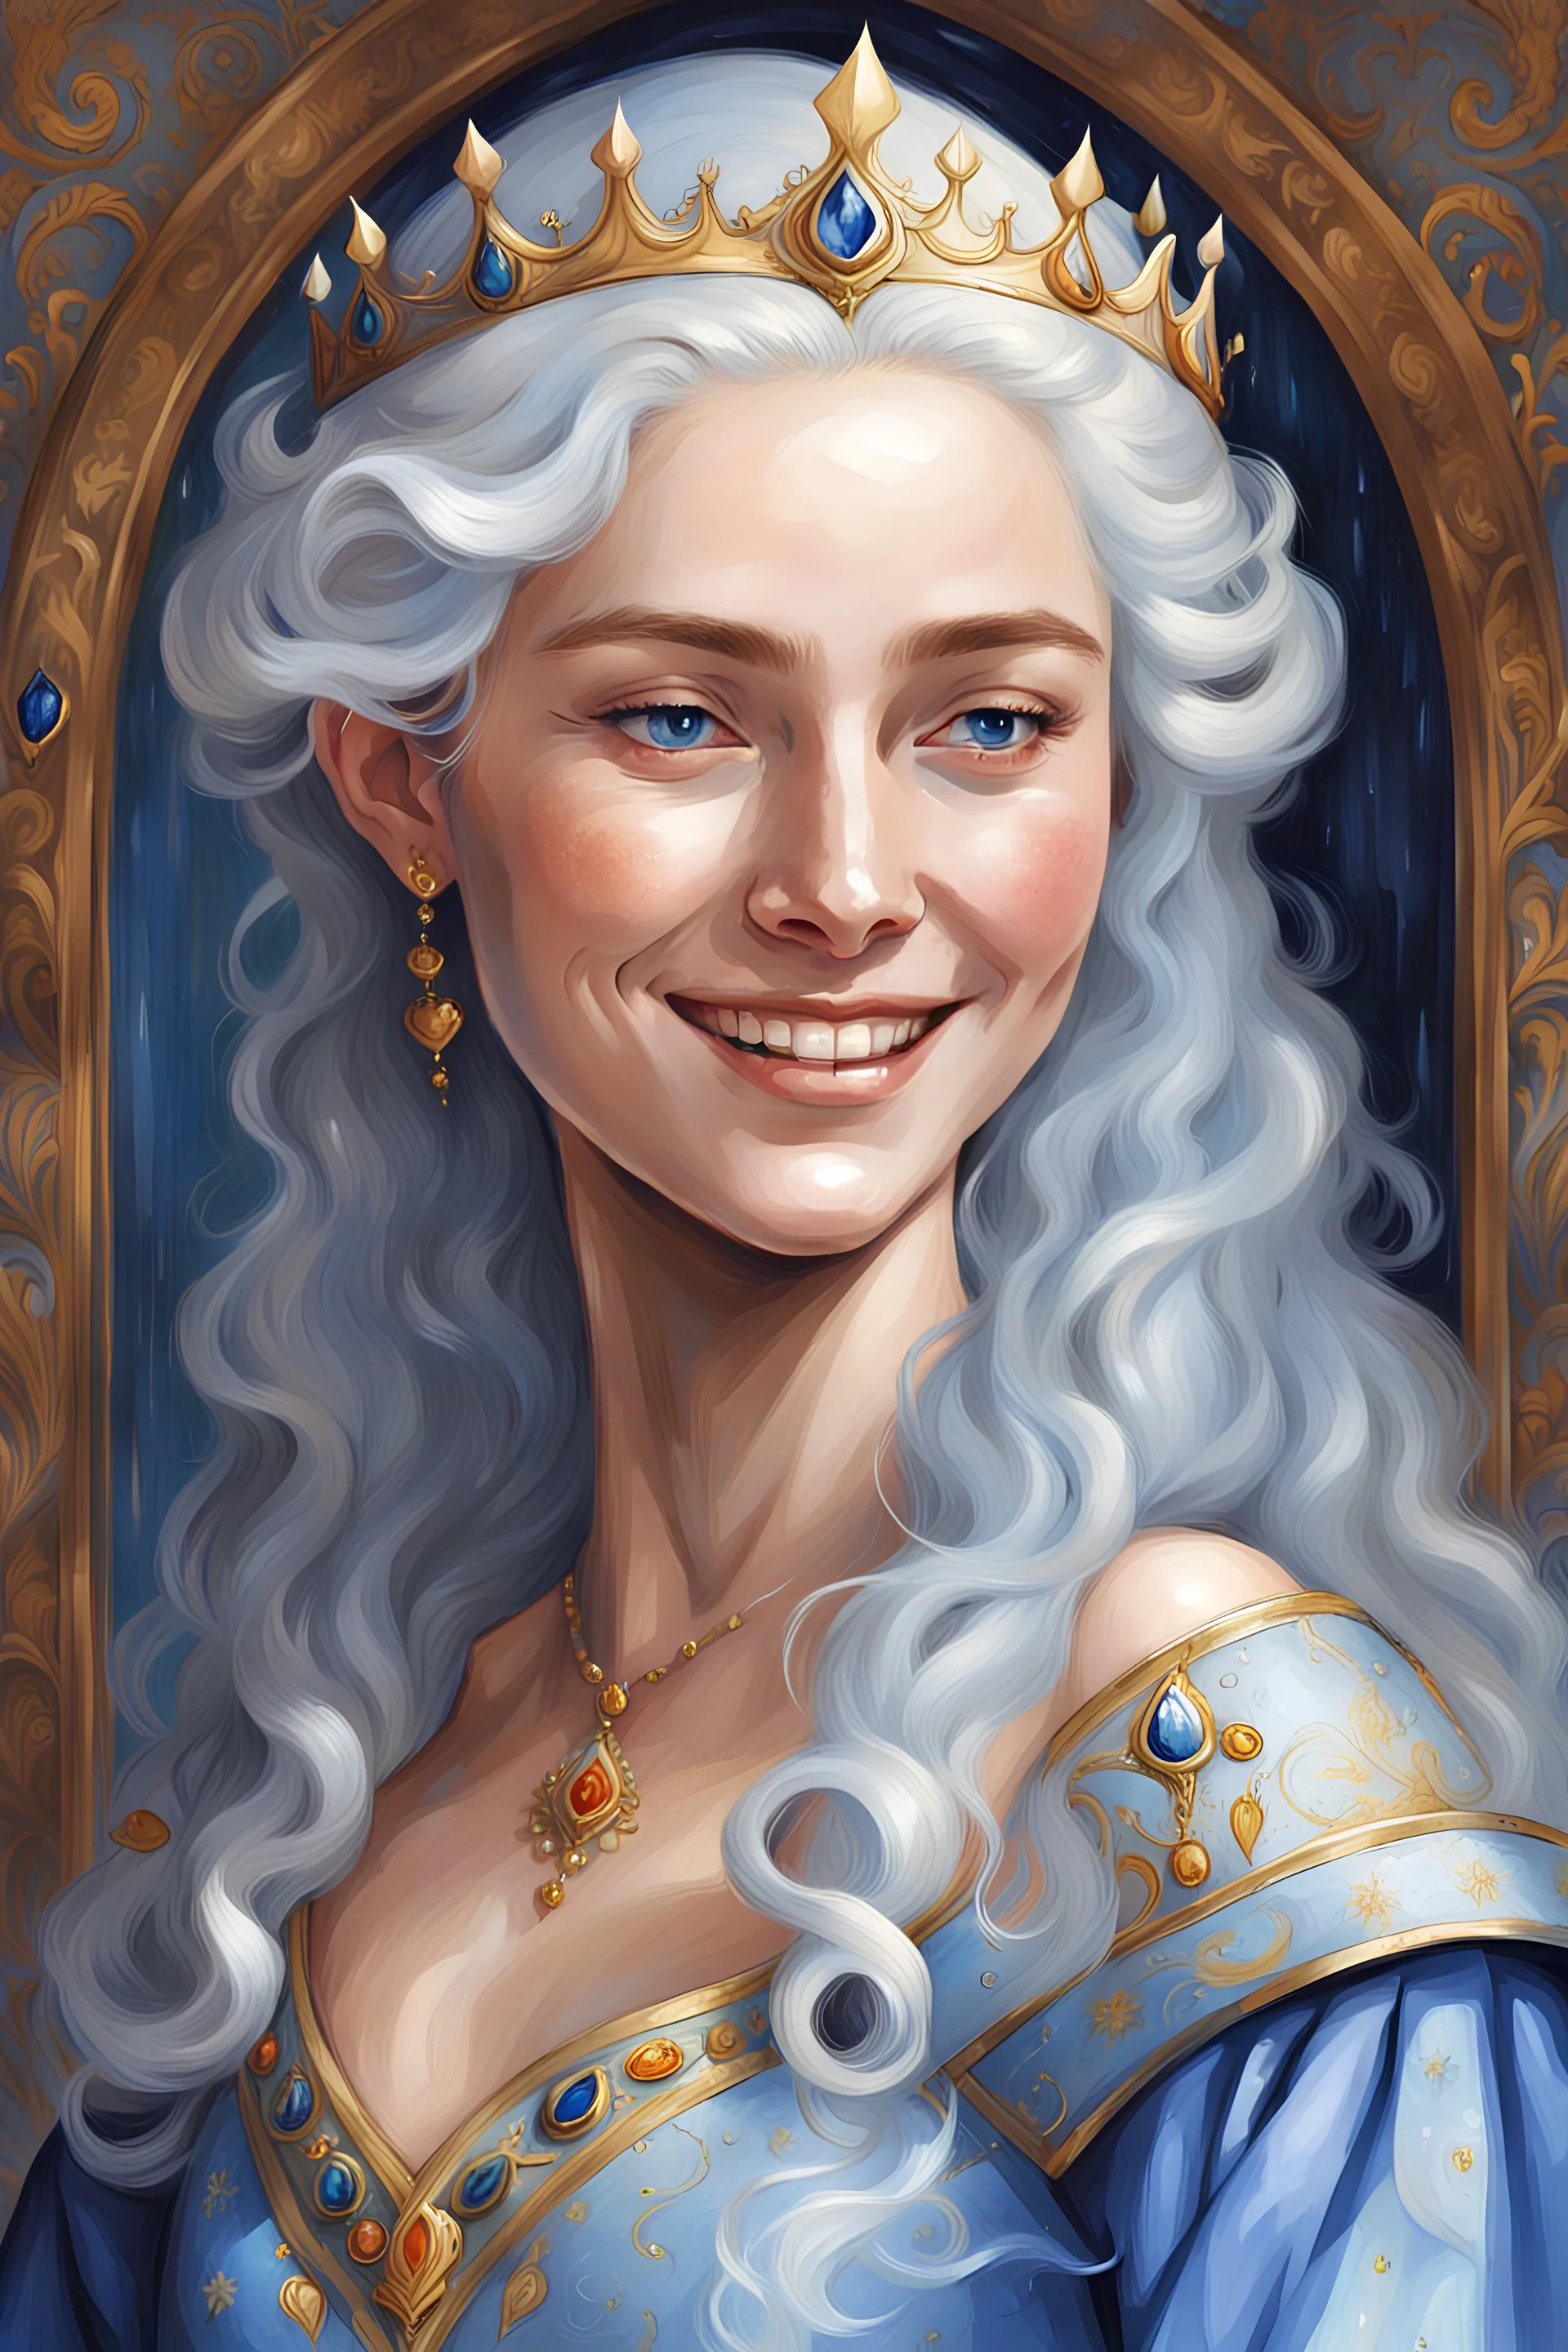 peinture, Maegelle Targaryen, 16 ans, souriante . incarne le charme des Targaryen avec ses mèches dorées chatoyantes, ses yeux saphir saisissants et son visage doux en forme de cœur. Sa silhouette élancée, ornée de traits délicats, accentue son élégance royale, tandis que ses mouvements gracieux reflètent l'innocence et la curiosité de la jeunesse. Elle porte des robes fluides bleu pâle et bleu sarcelle, ajoutant à son charme intemporel.